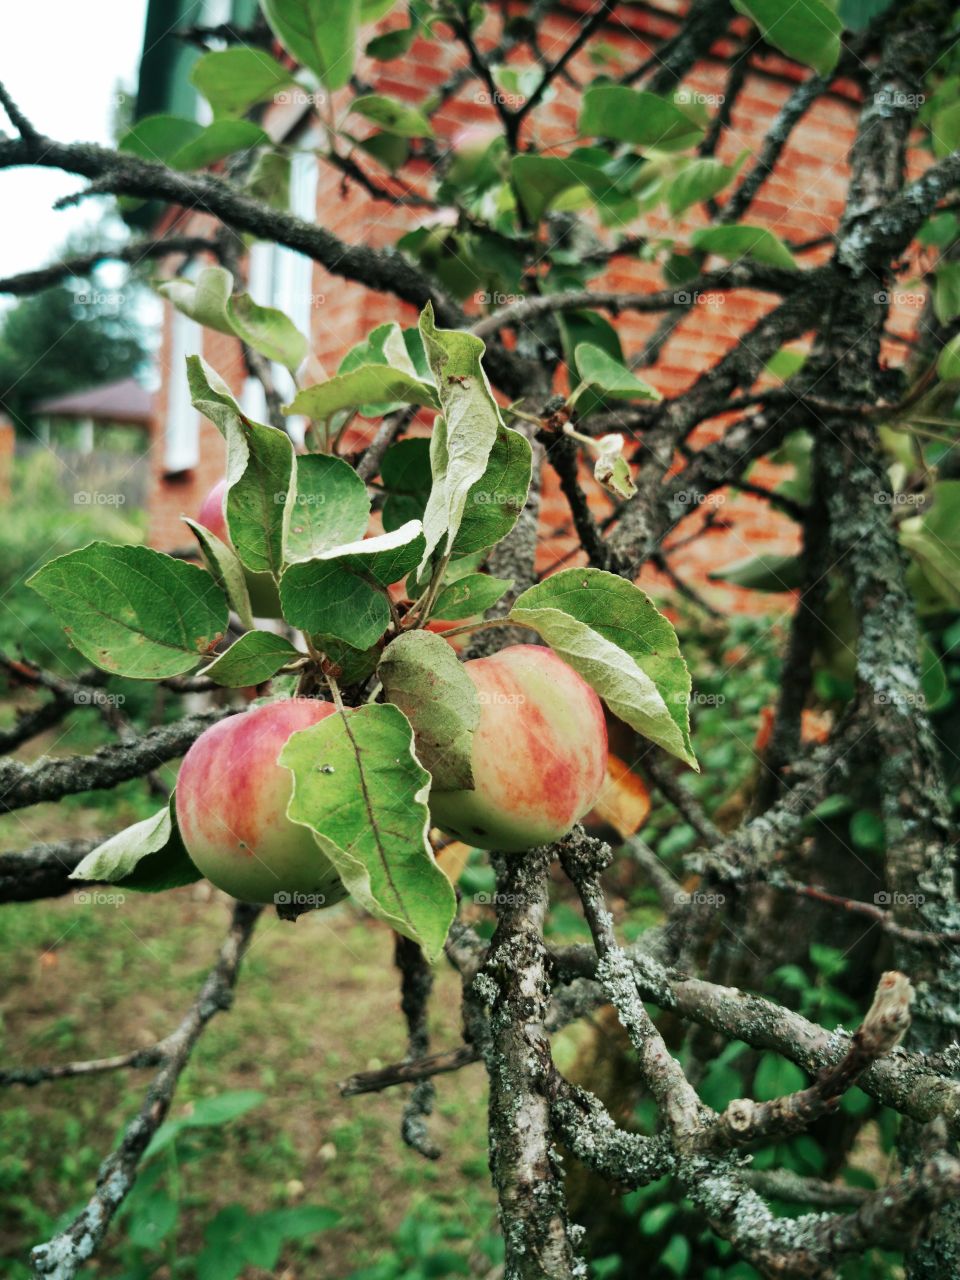 Apples on old apple tree